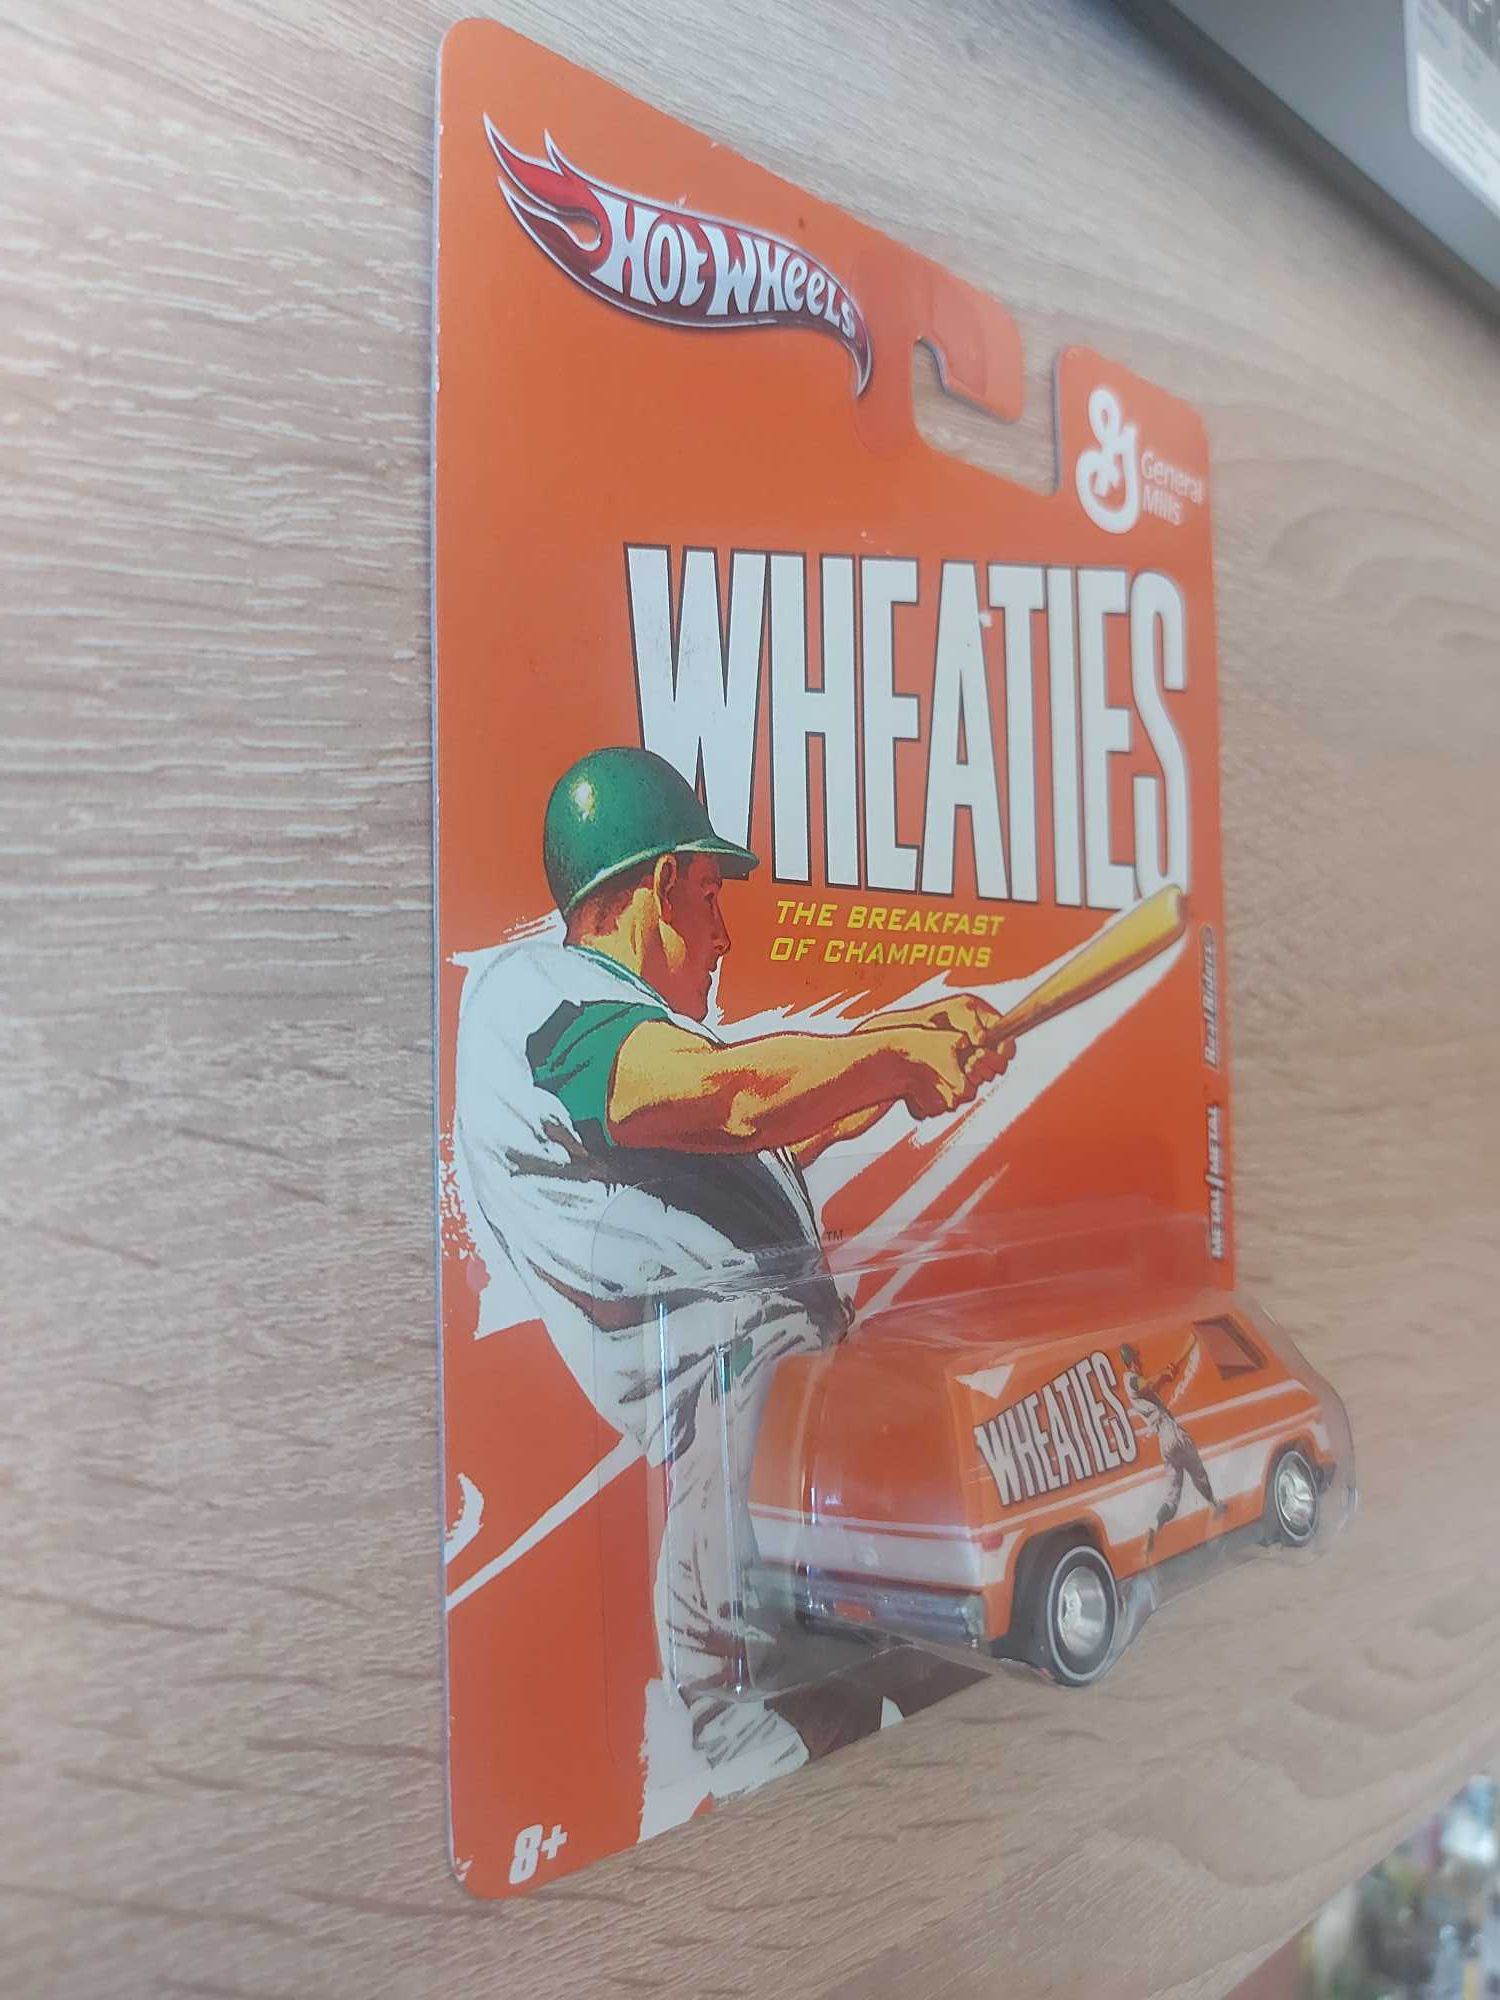 Hot Wheels Premium 

'70s VAN 

Wheaties - The Breakfast Of Champions